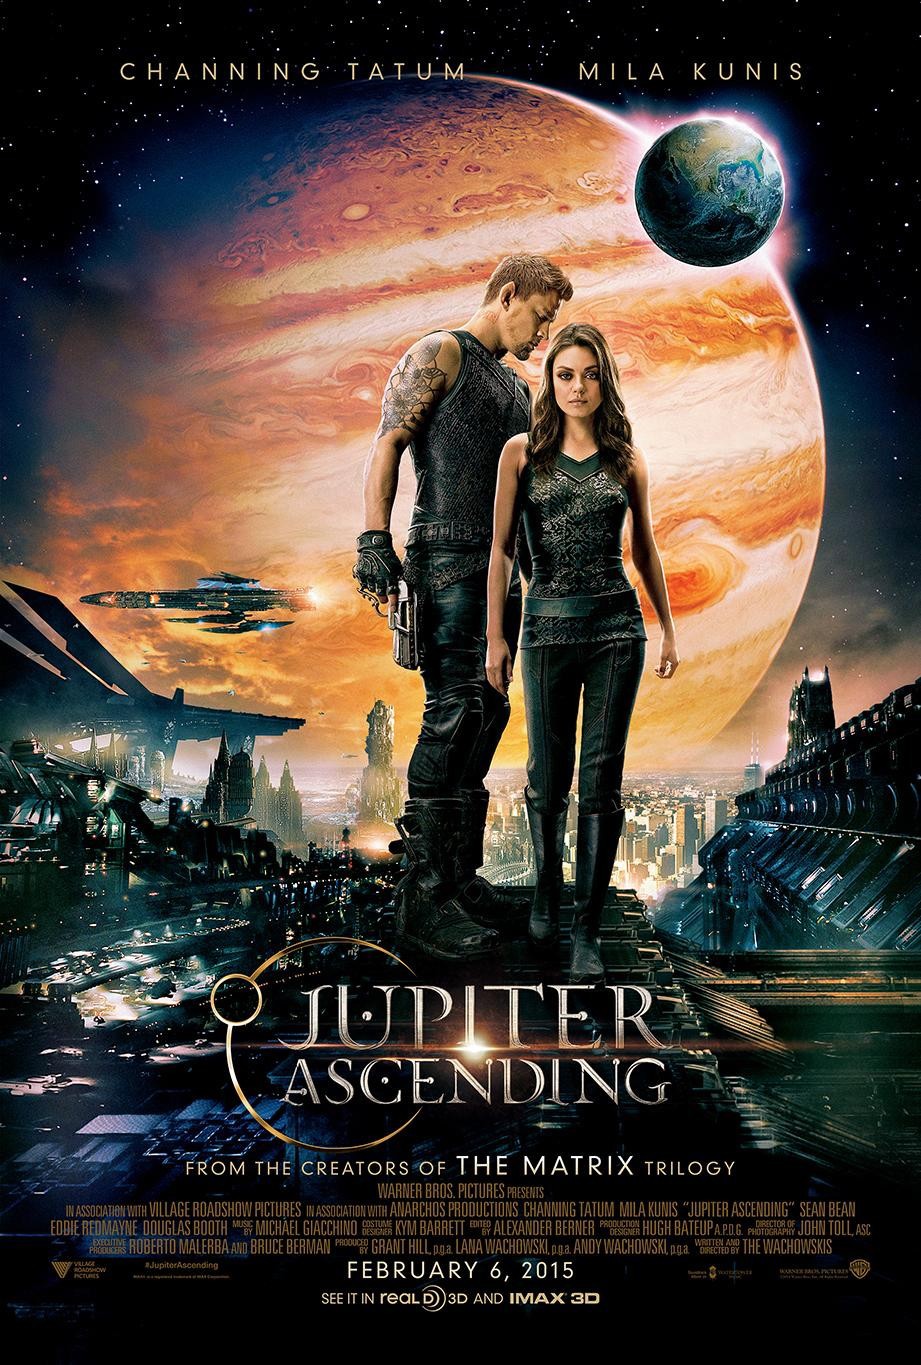 FULL MOVIE: Jupiter Ascending (2015)